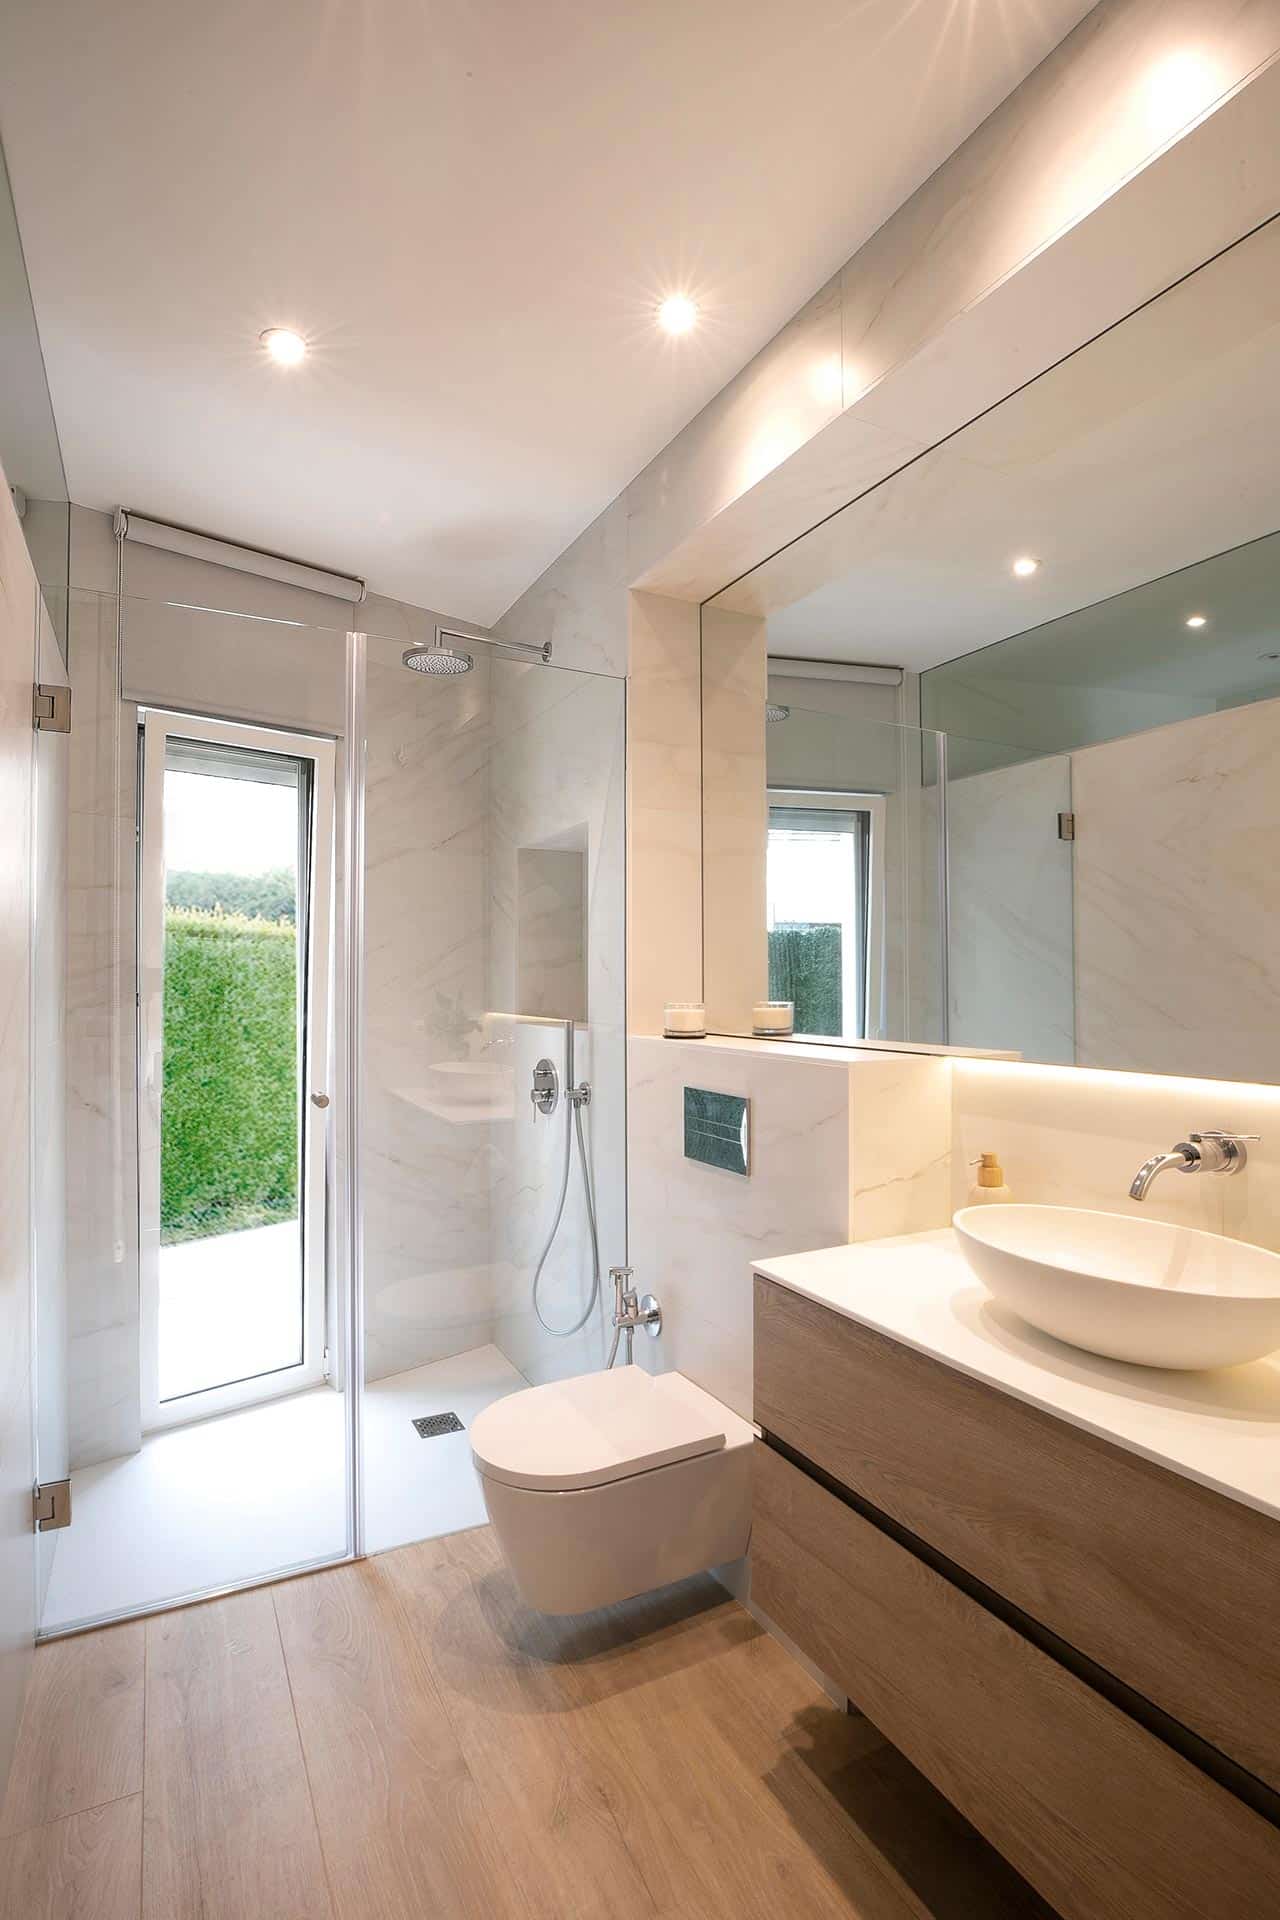 Baño blanco tono mármol con espejo en reforma de vivienda de diseño diseñada por Moah Arquitectos en Cantabria